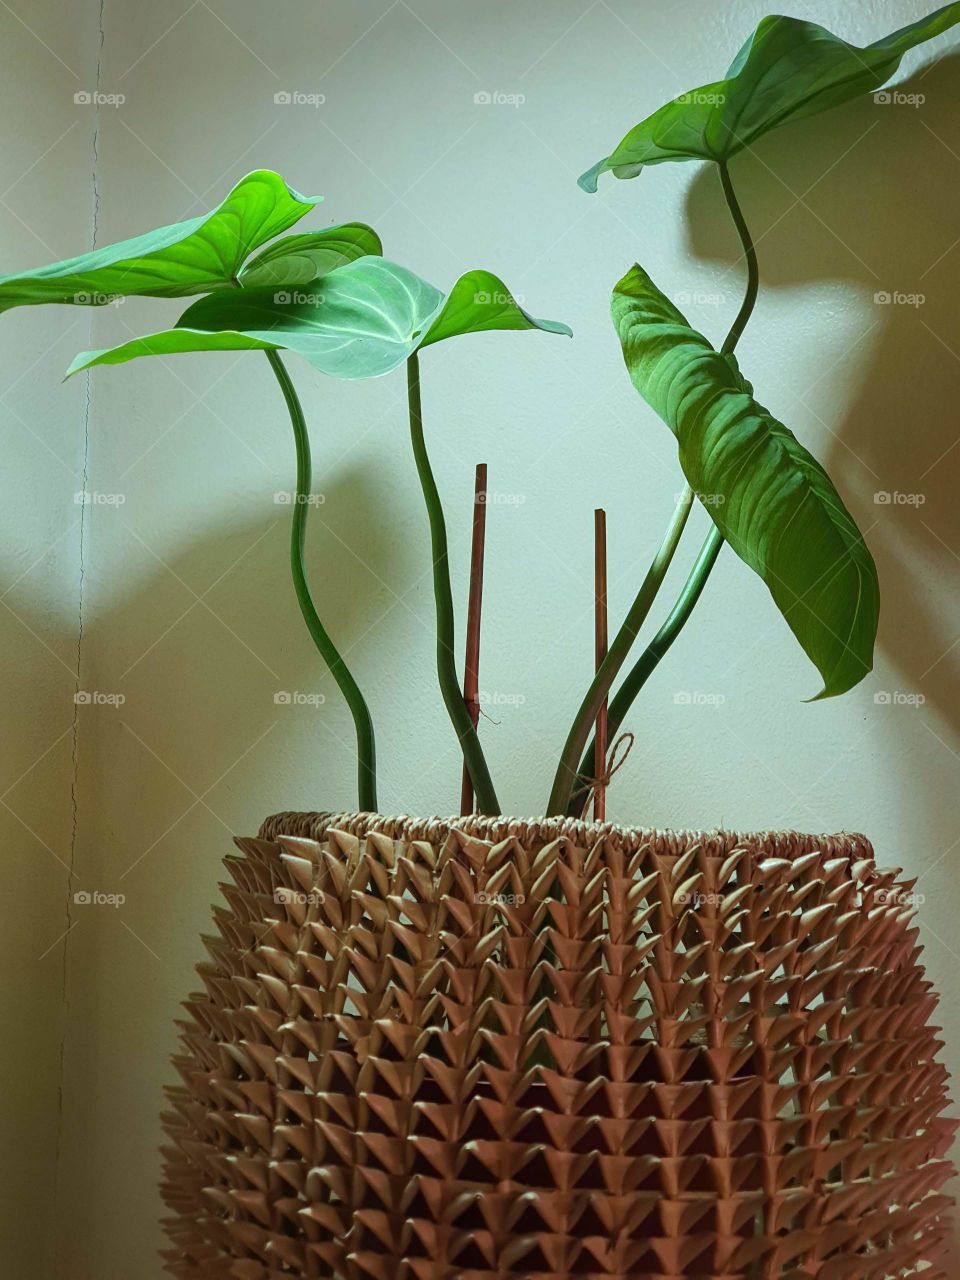 Beautiful Indoor Plant In Basket